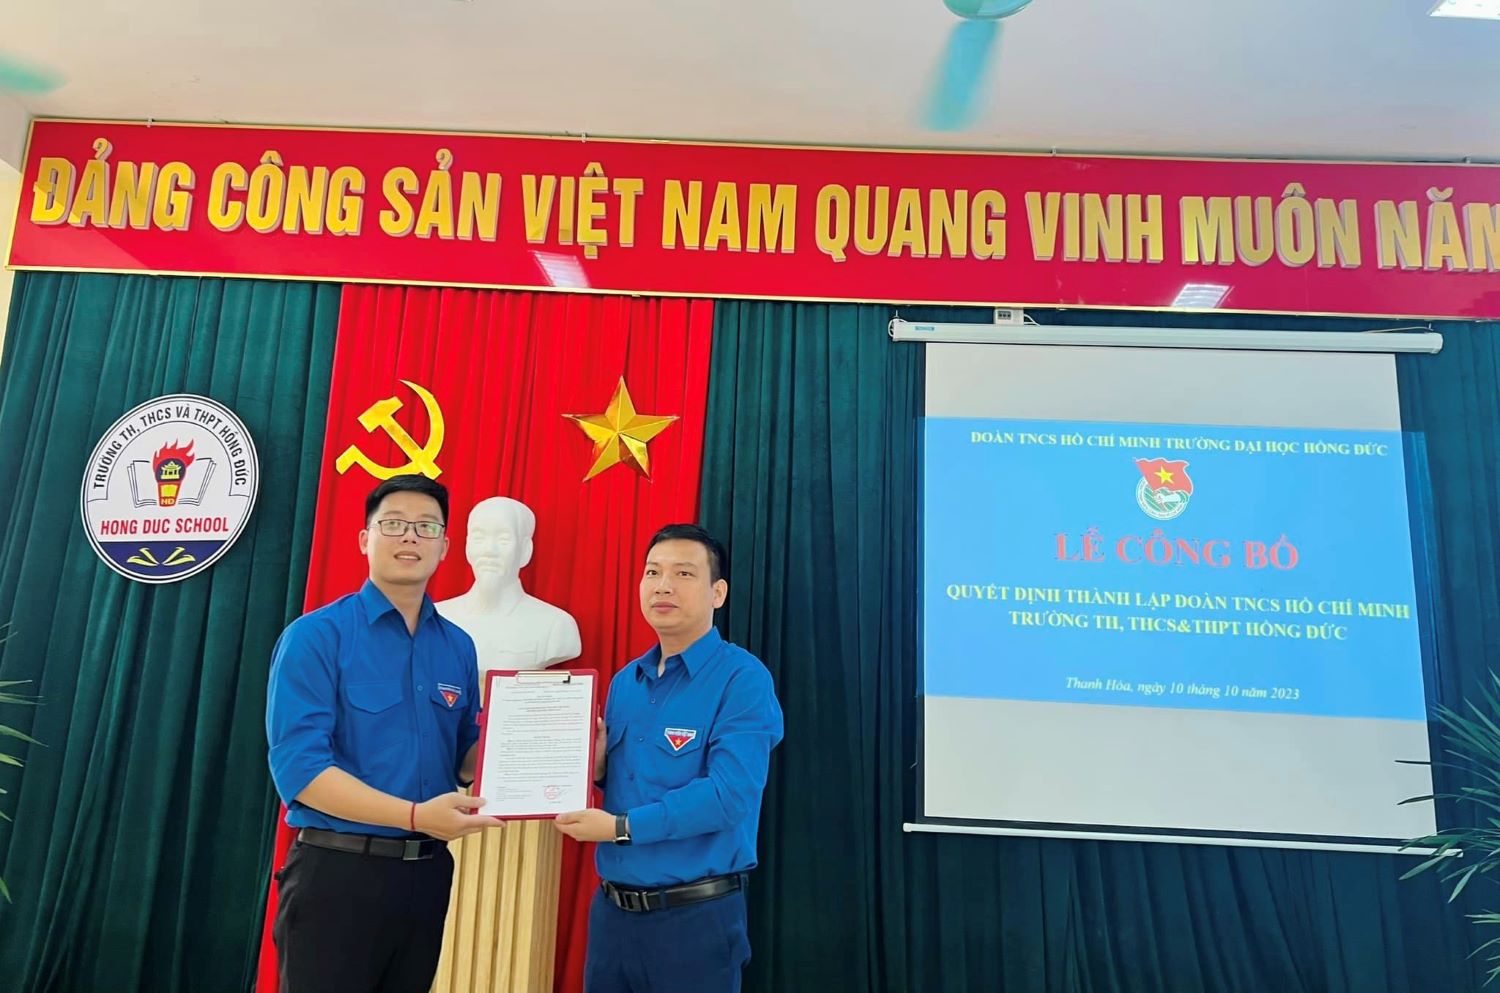 Lễ công bố quyết định thành lập Đoàn TNCS Hồ Chí Minh Trường TH, THCS và THPT Hồng Đức.